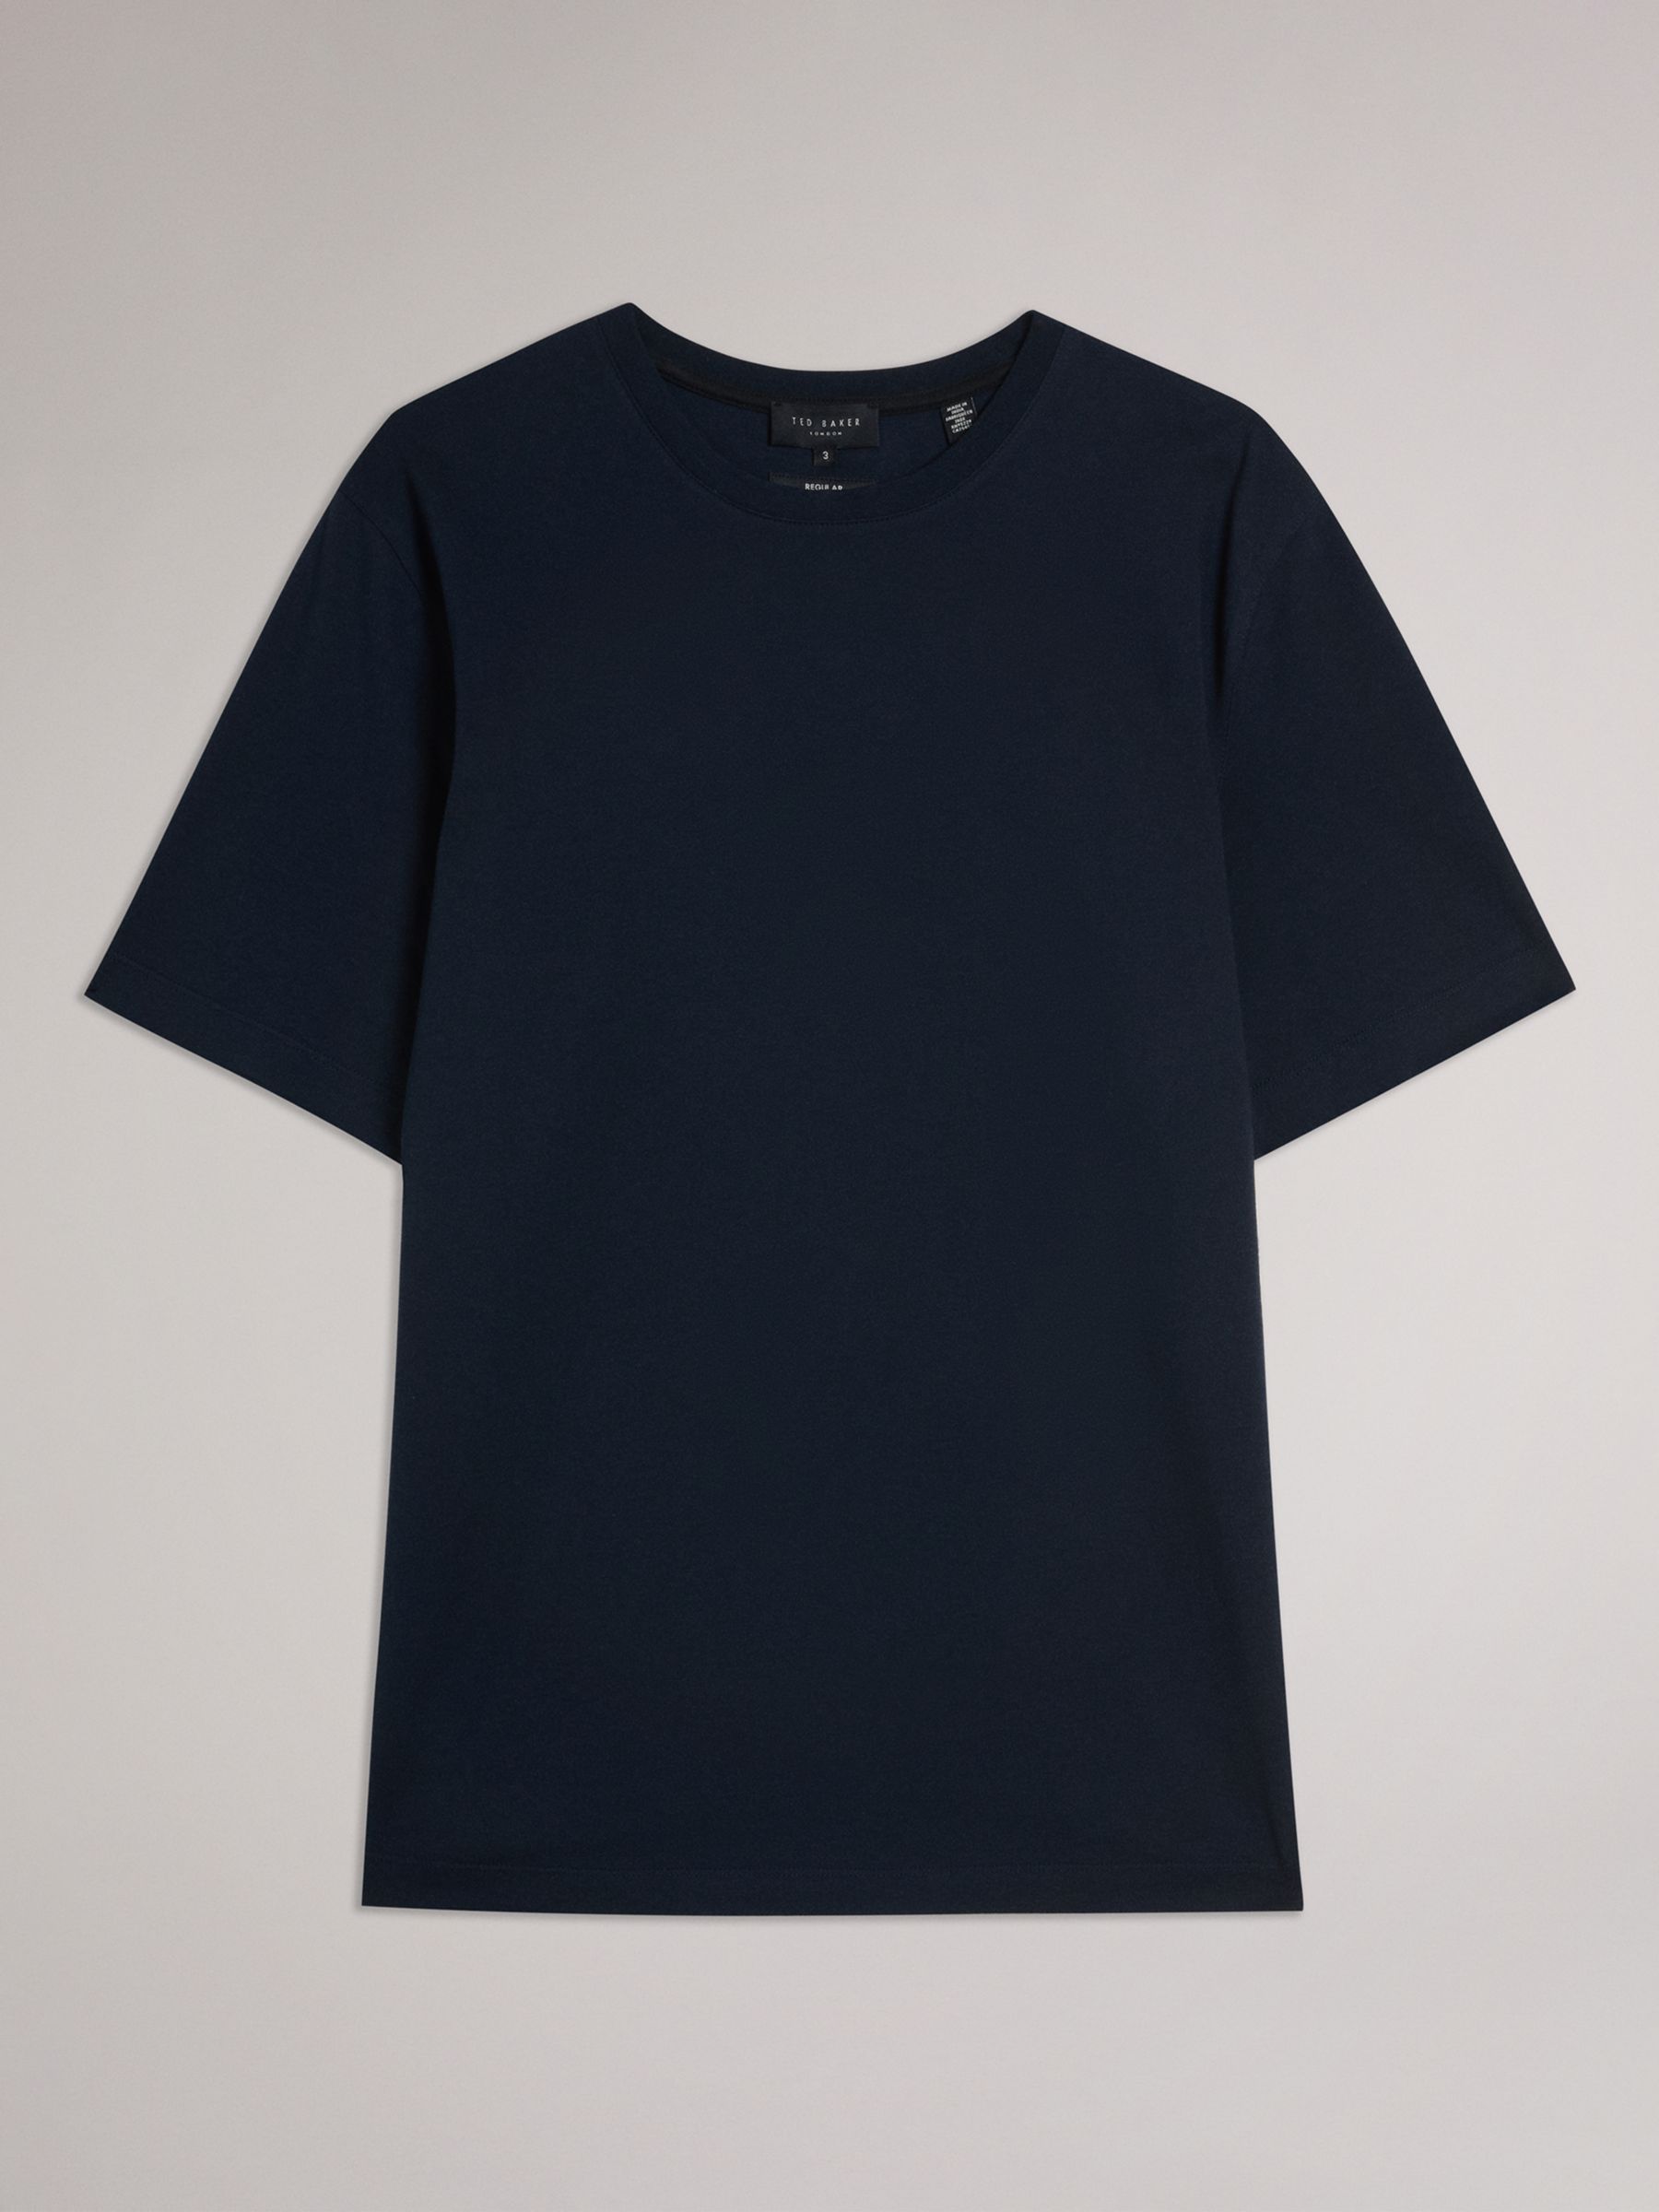 Ted Baker Tywinn Cotton T-Shirt, Blue Navy, XS